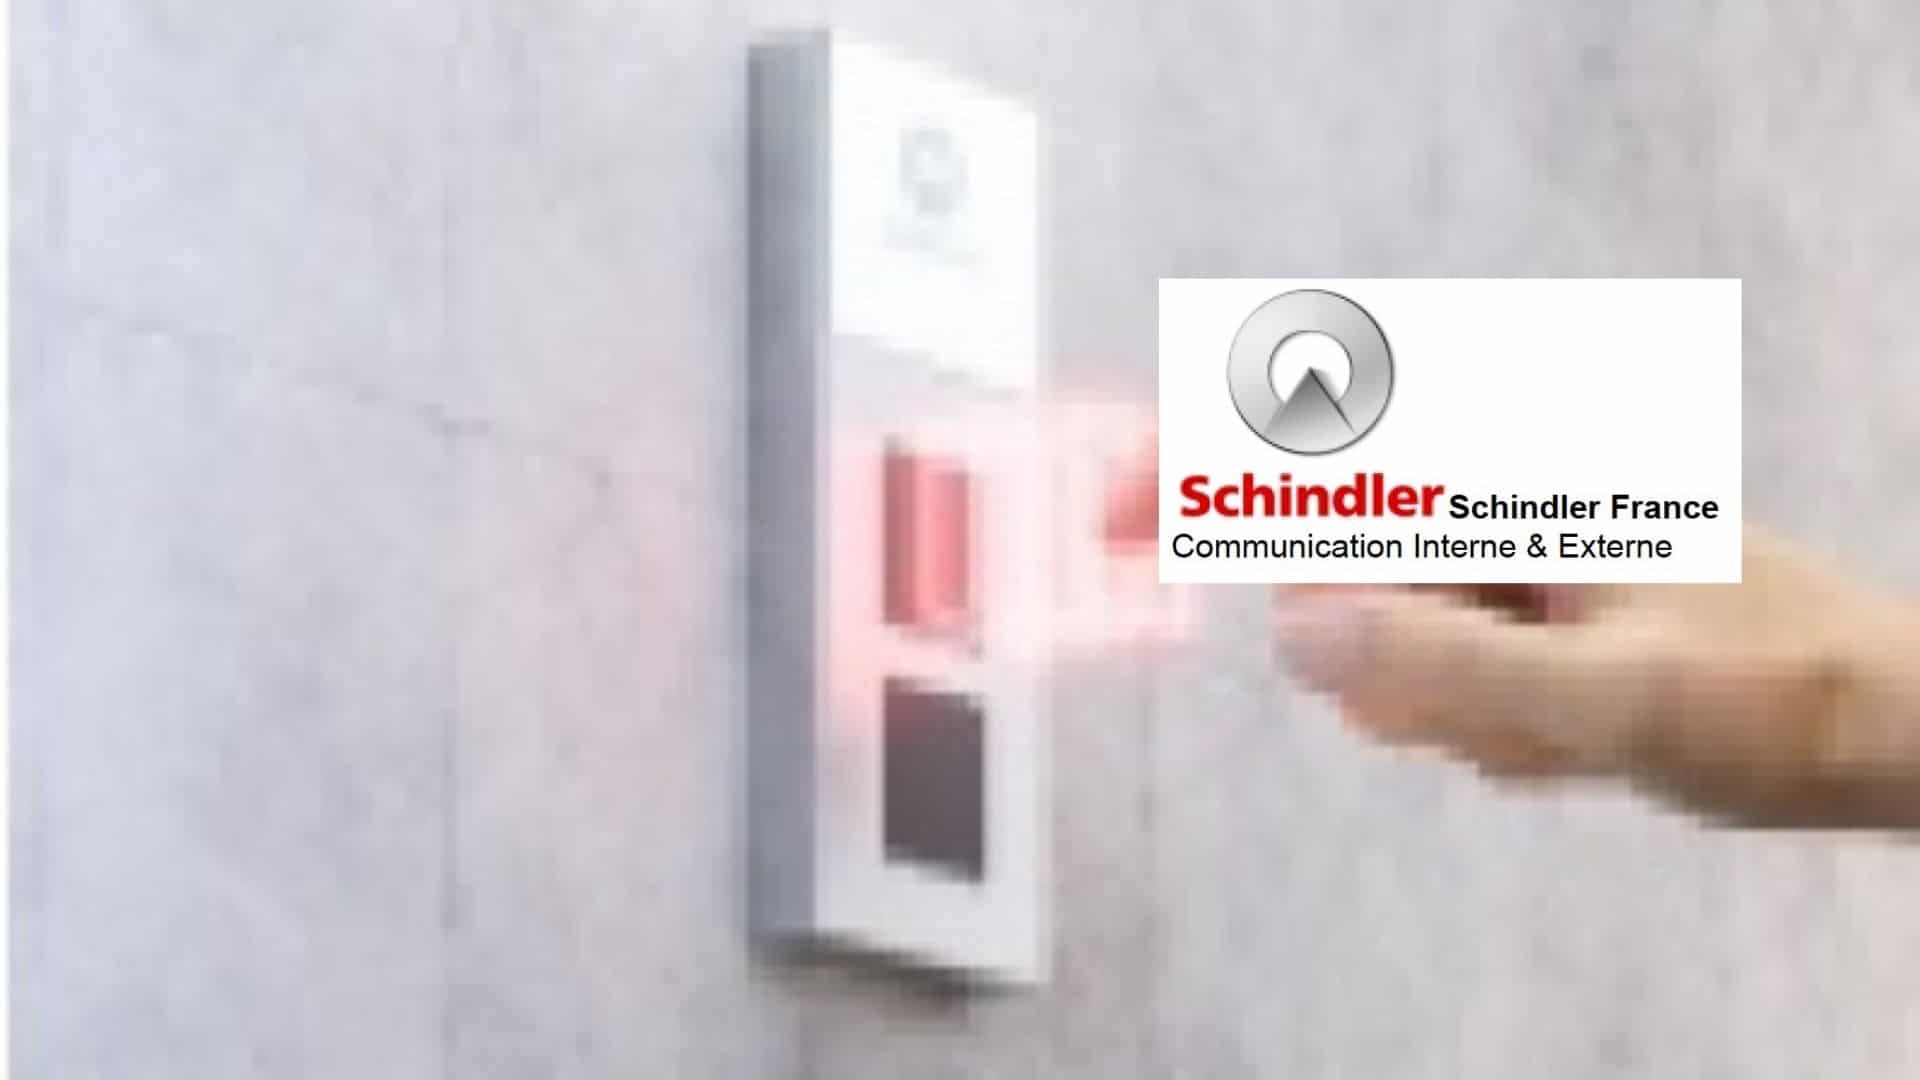 Les ascenseurs connectés de Schindler concilient mobilité sans contact et responsabilité sanitaire